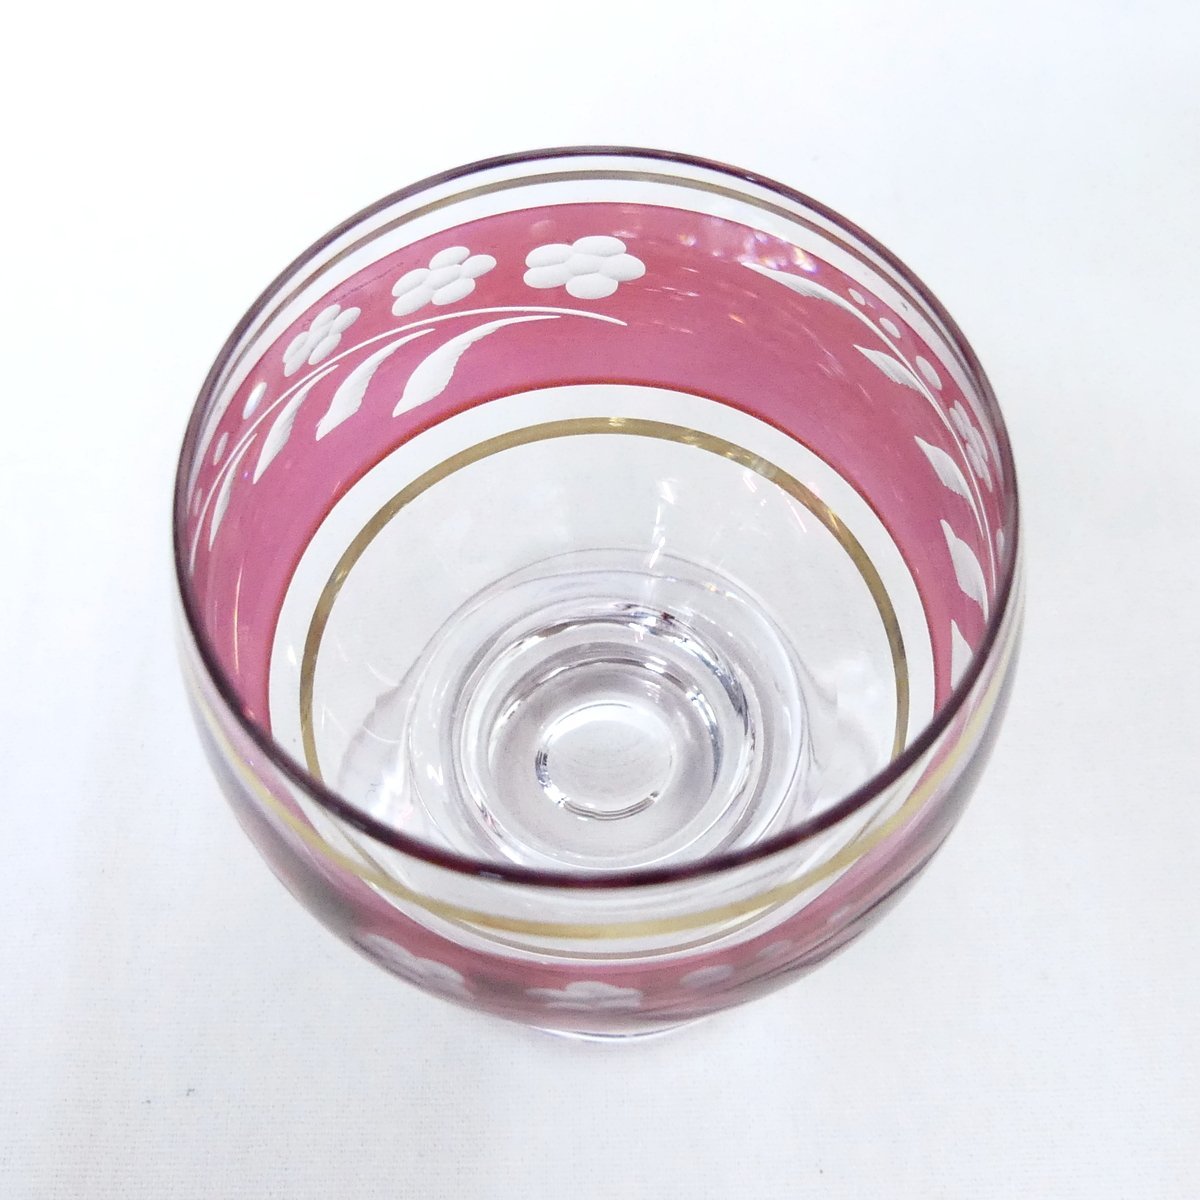 ラスカボヘミア クリスタルガラス 冷酒グラス ペア レッド ブルー ボヘミアングラス 2個セット 美品 /2402C_画像3